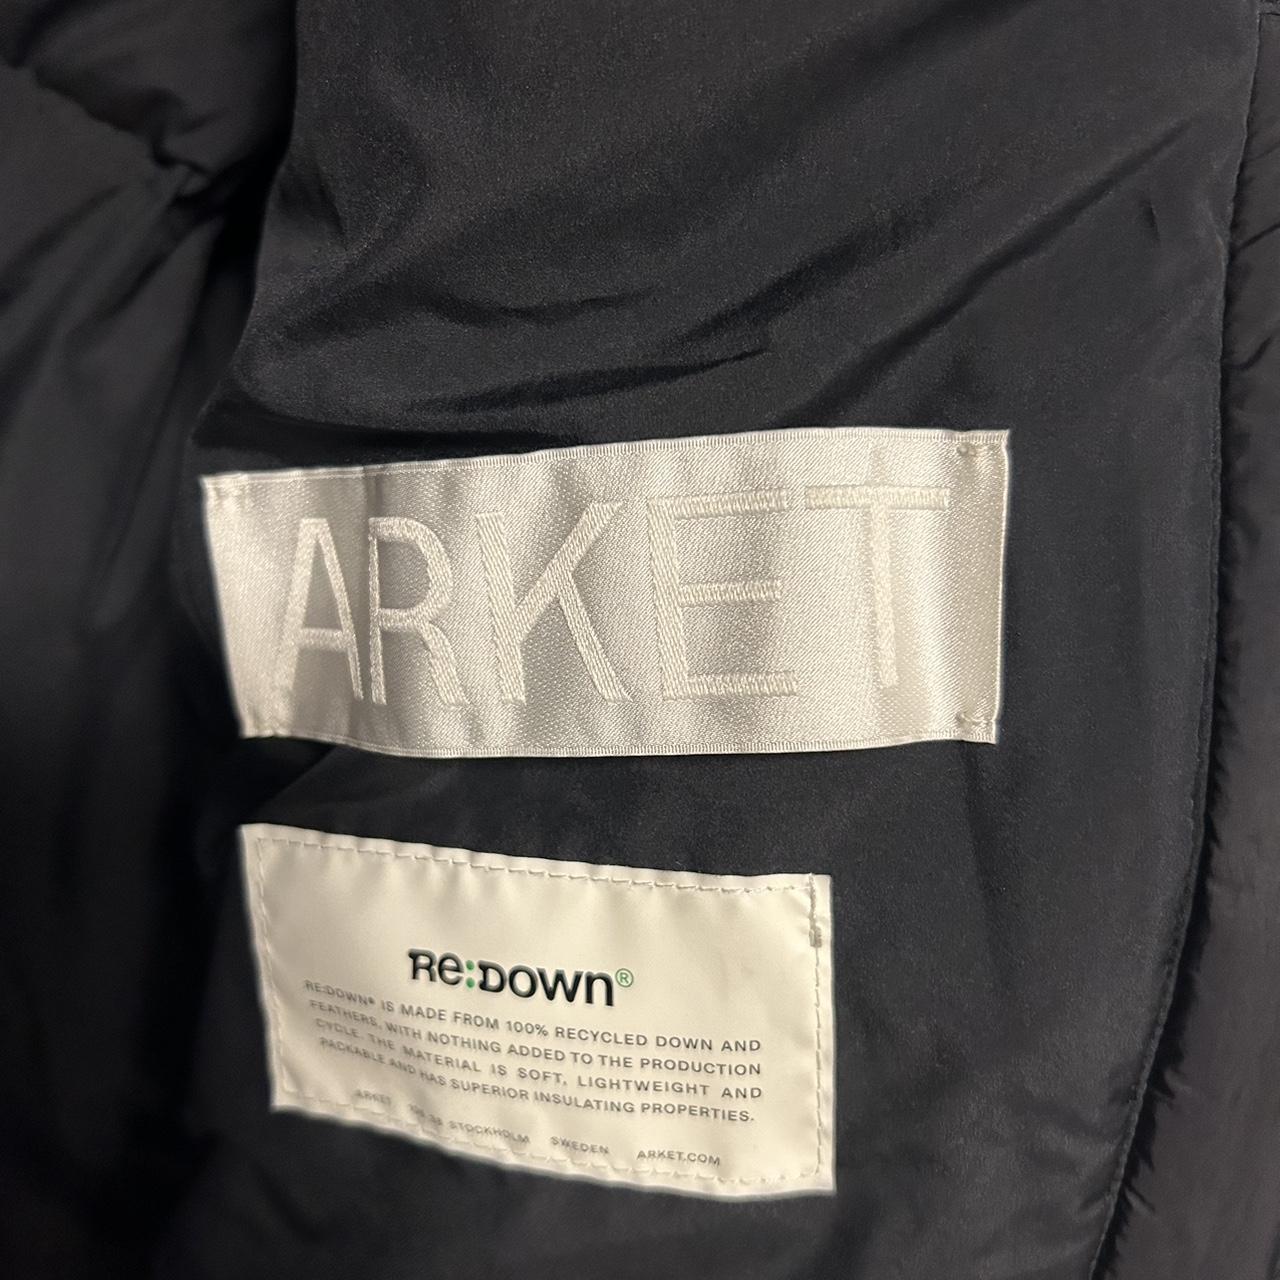 Arket Down Puffer Coat Size Large Fits TTS - Depop